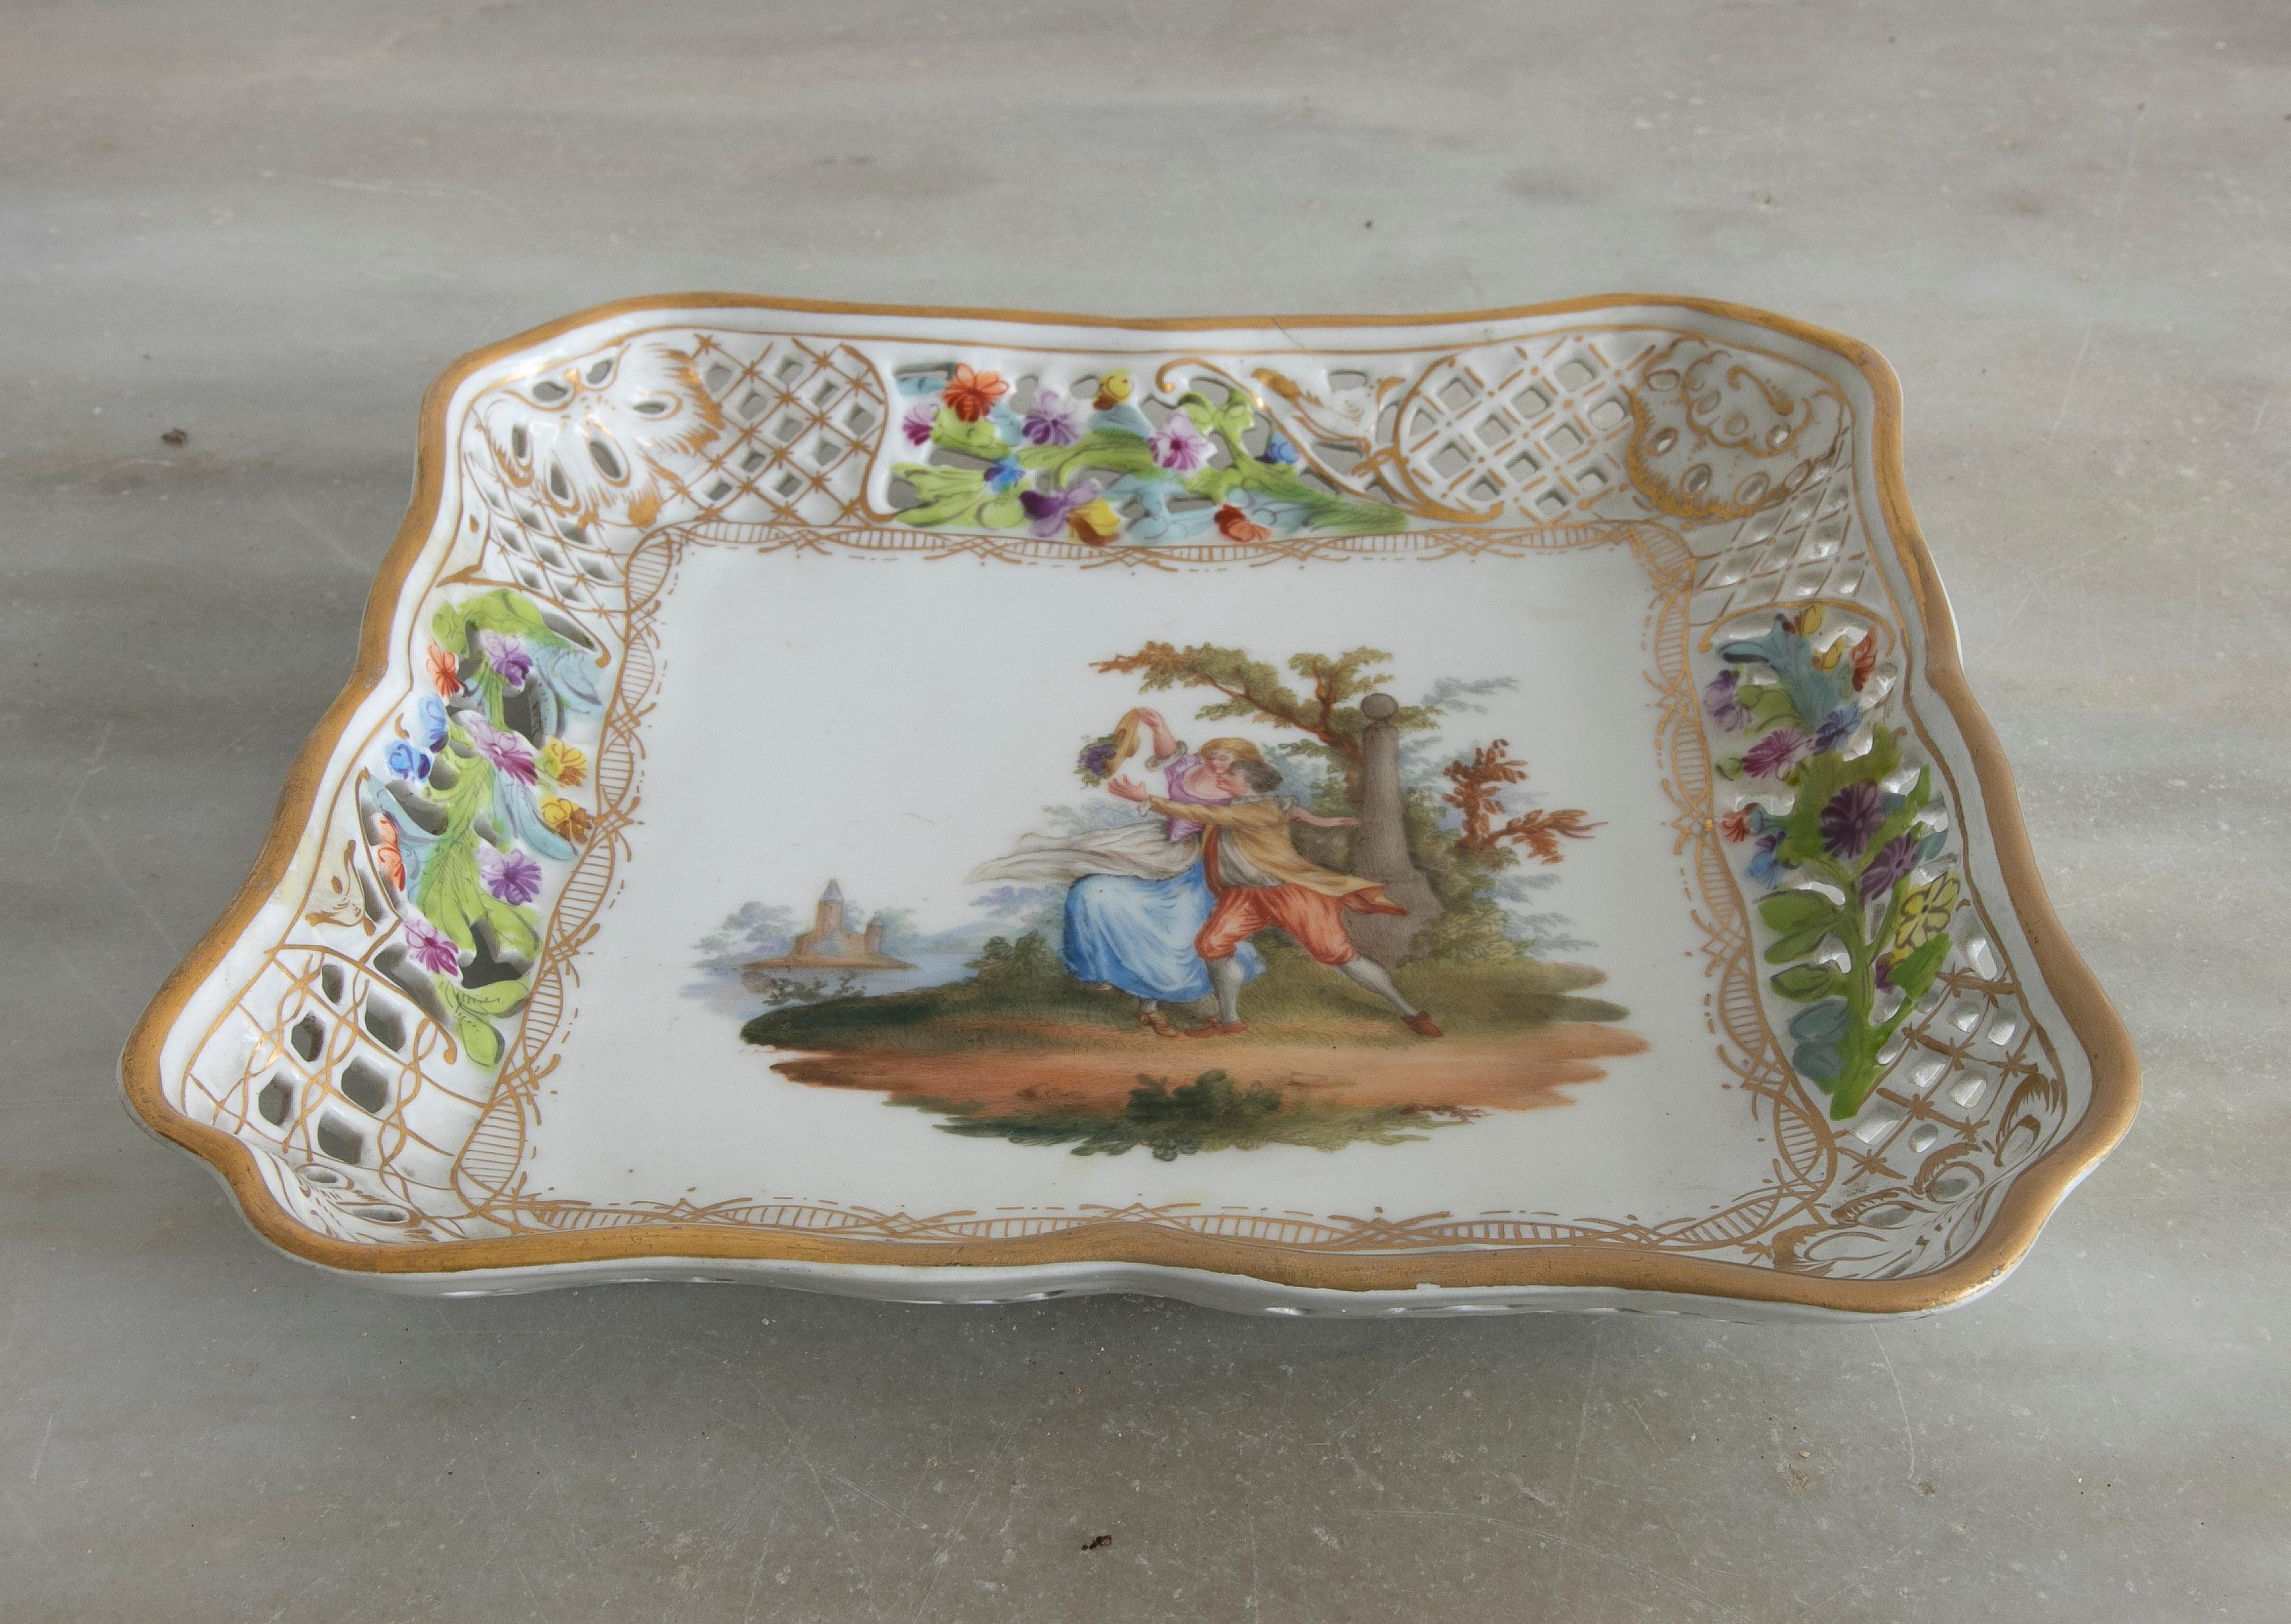 Original Meissener Porzellantablett aus den 1950er Jahren mit festlicher Vignette mit Mann und Frau und typischem Blumendekor.